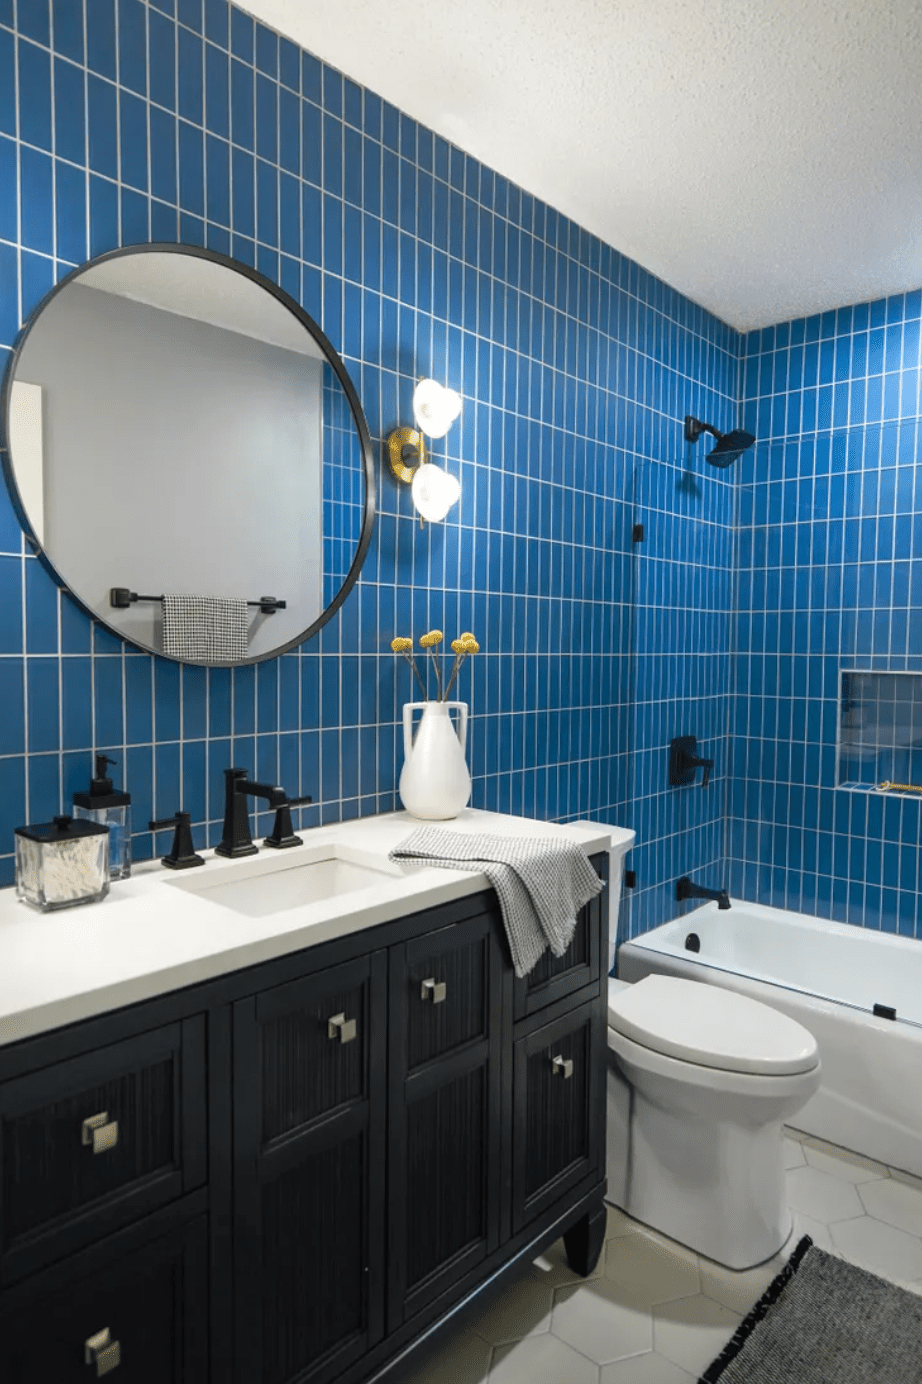 Royal blue bathroom with black vanity